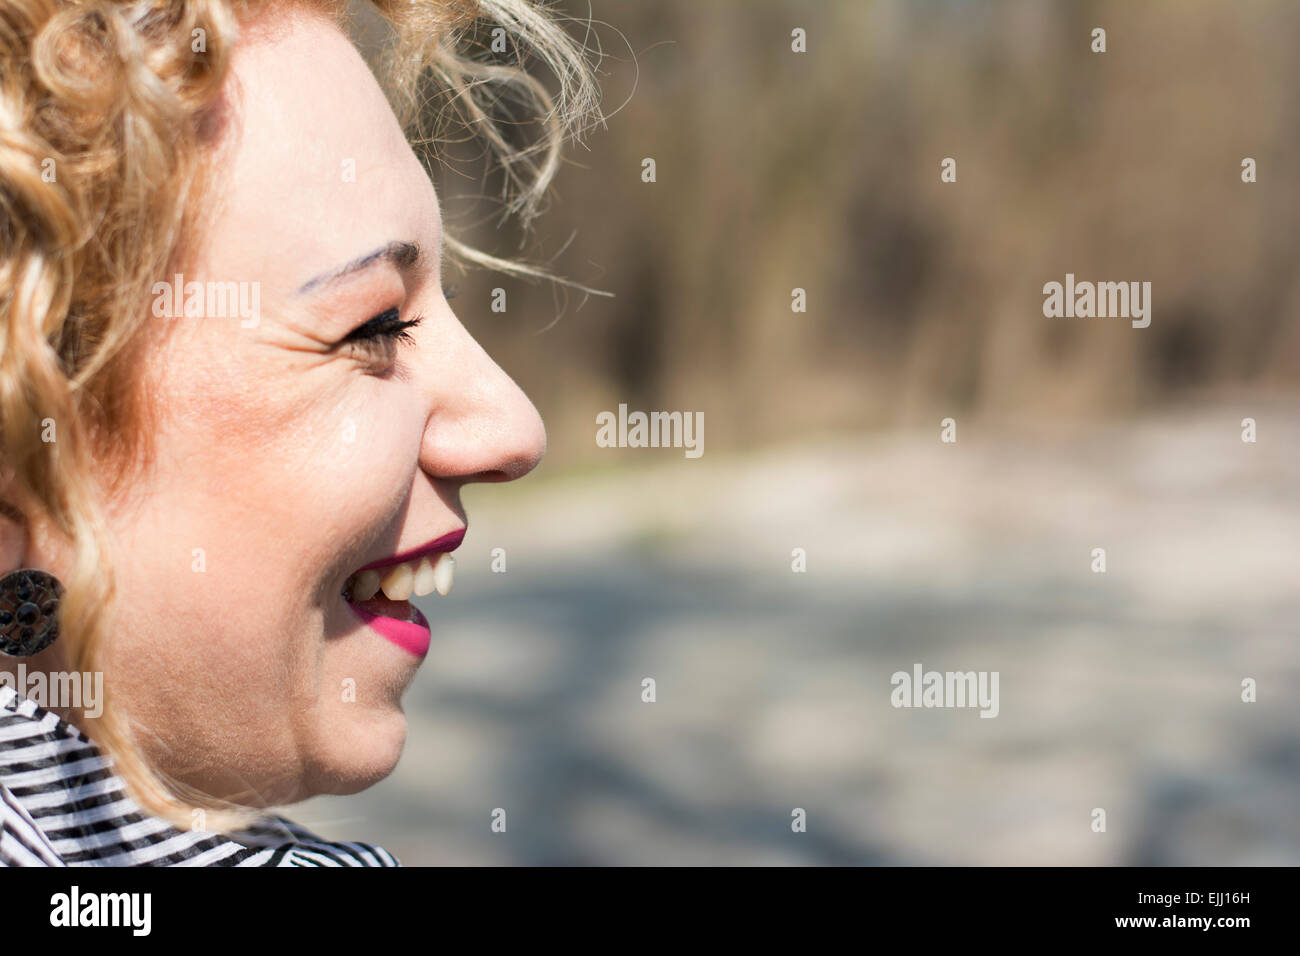 Closeup portrait d'une jolie jeune femme avec des cheveux bouclés blonds Laughing Out Loud Banque D'Images